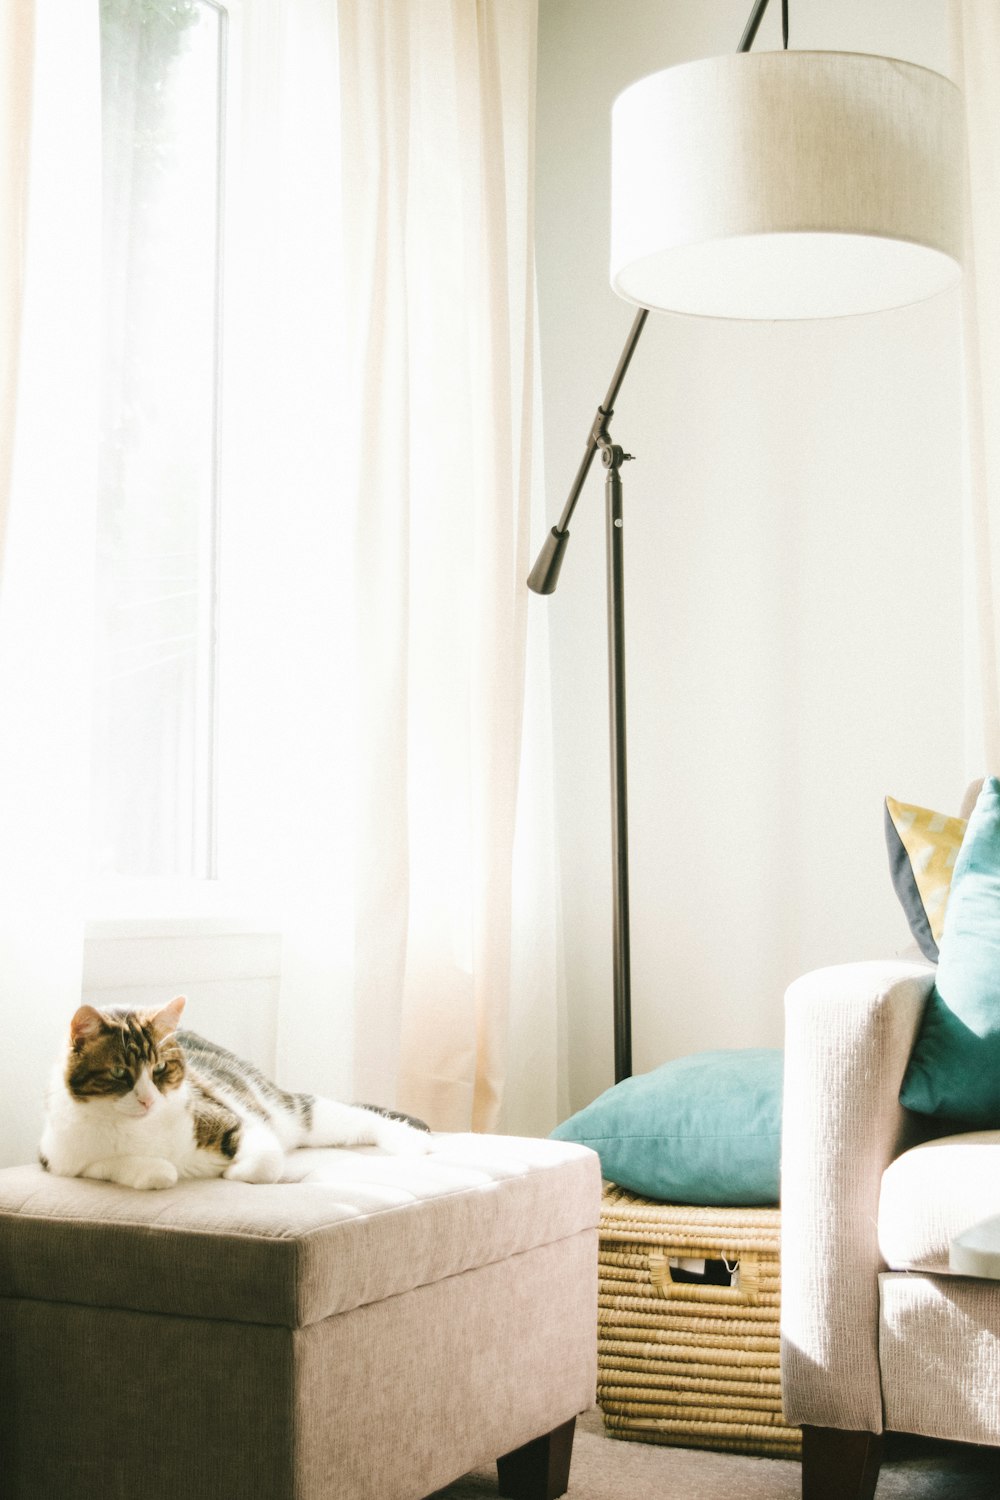 Chat gris et blanc allongé sur un pouf brun près du canapé, d’un panier à linge et d’un lampadaire à l’intérieur d’une pièce bien éclairée